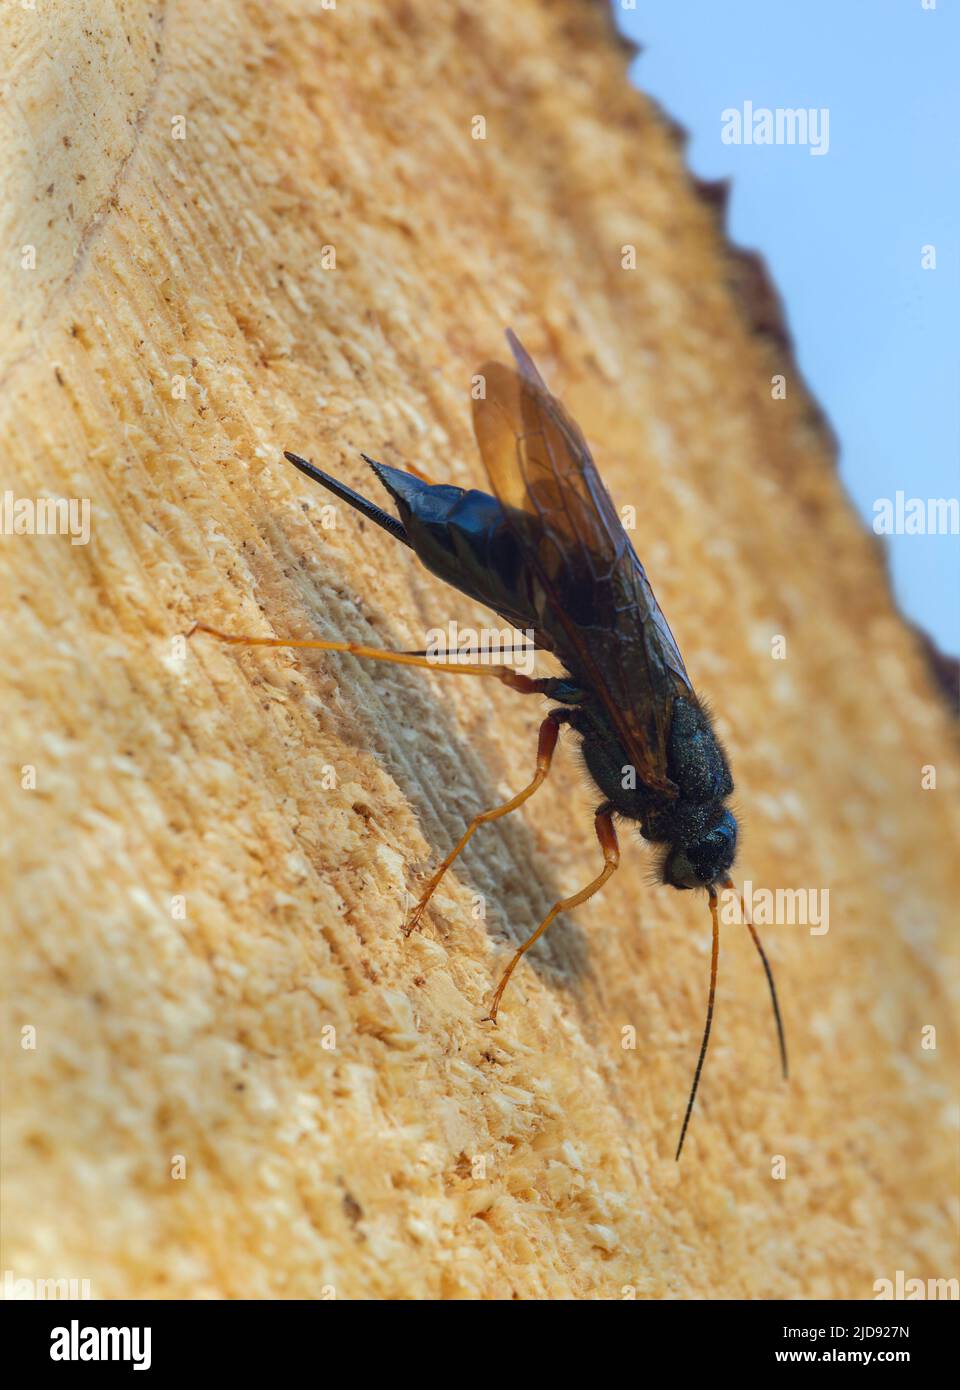 Stähleblaue Holzwespe, Sirex juvencus Eier in Tannenholz legen, kann dieses Insekt ein Schädling auf Nadelholz sein Stockfoto